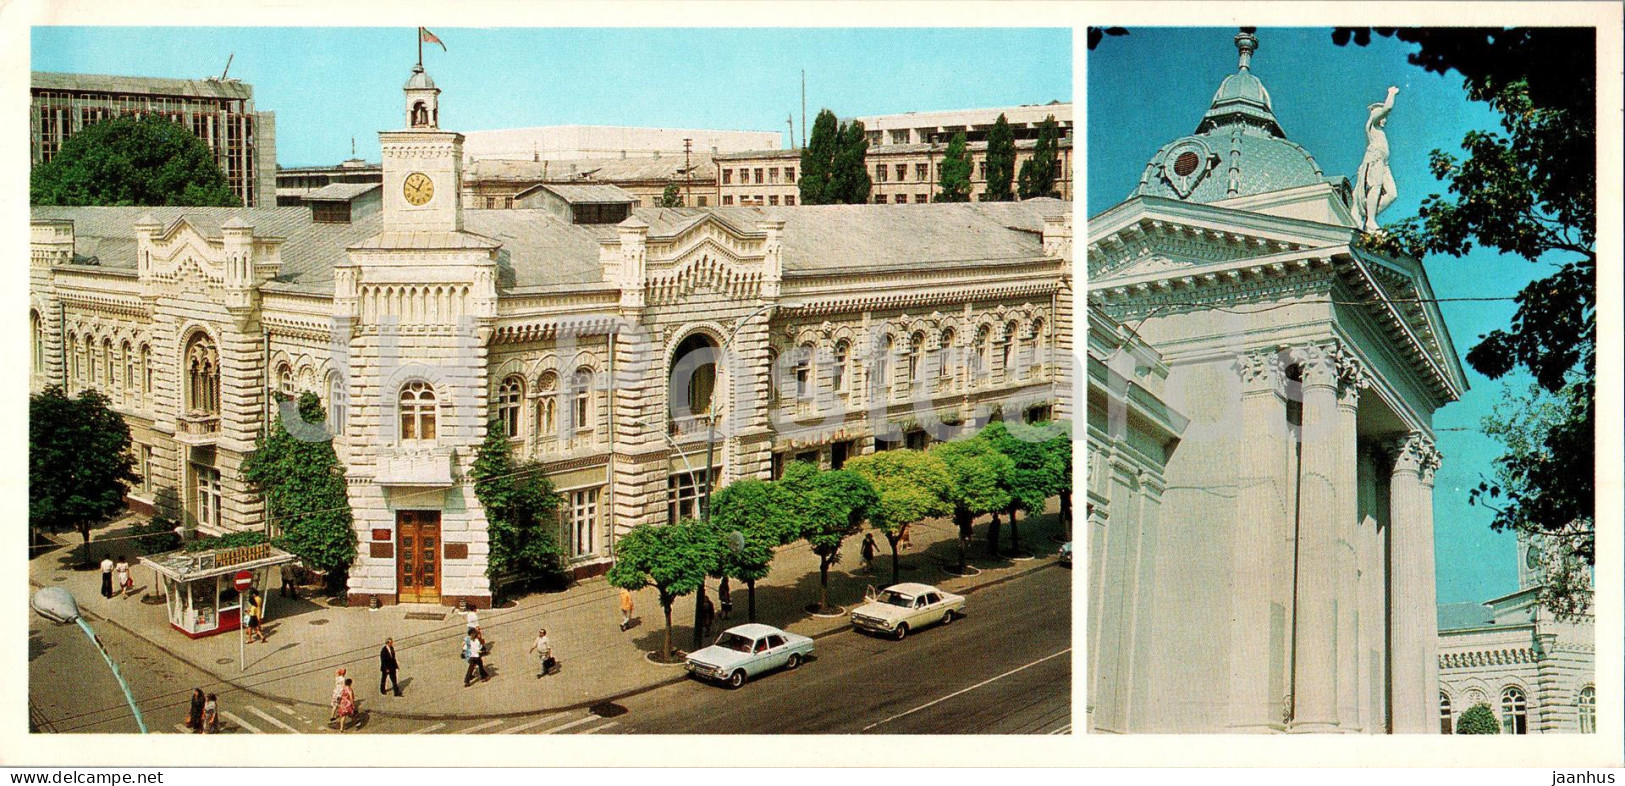 Chisinau - The Building Of City Executive Committee - The Organ Hall - 1980 - Moldova USSR - Unused - Moldavie